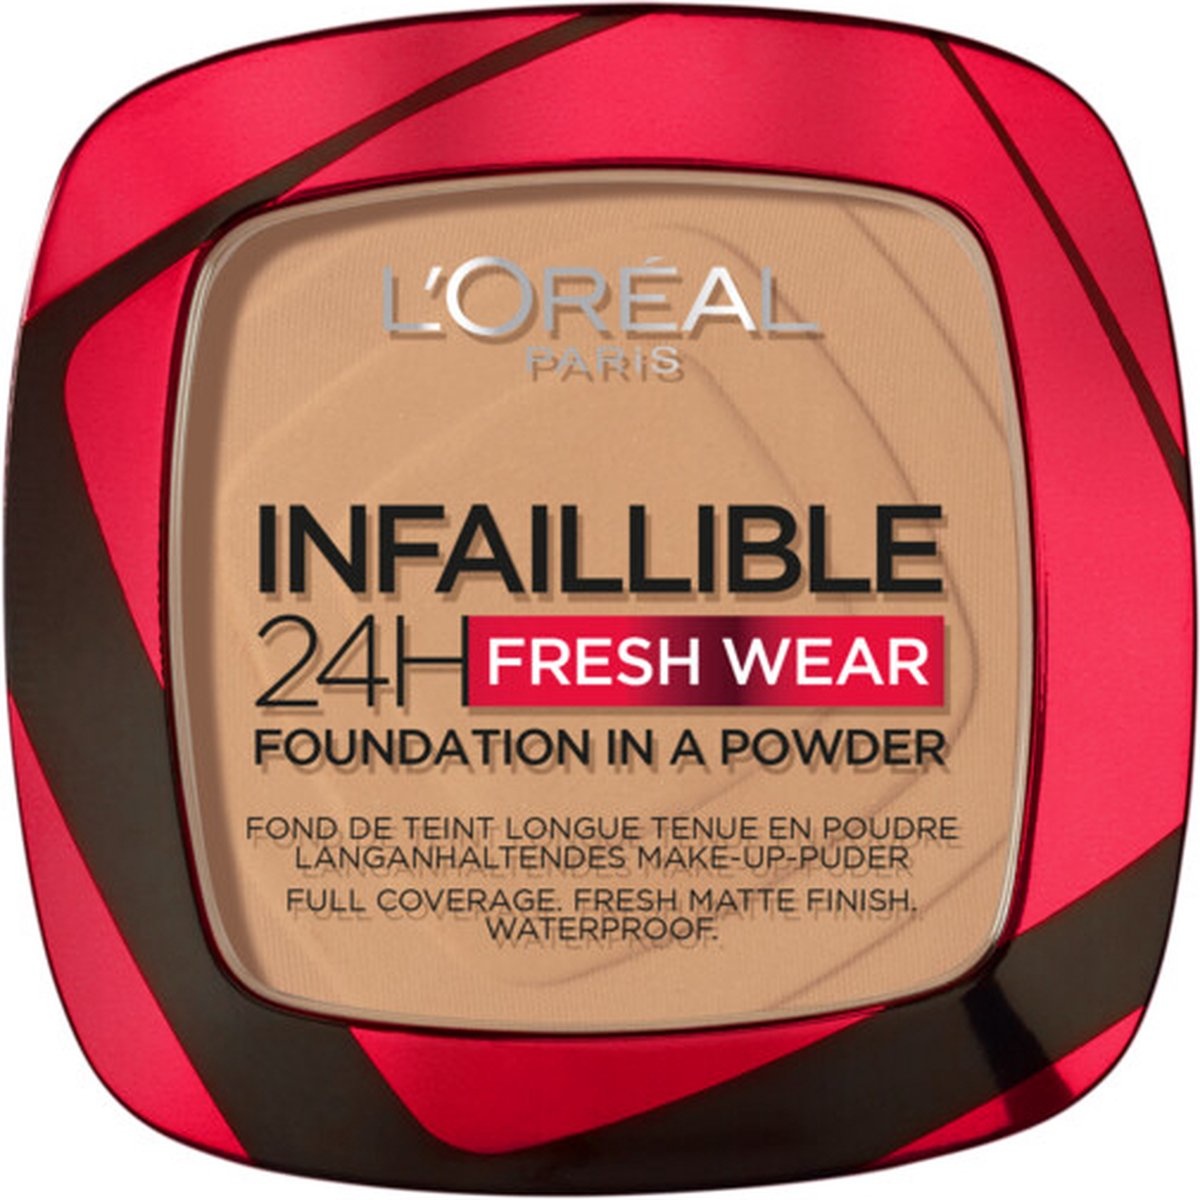 L'Oréal Paris - Infaillible 24H Fresh Wear Foundation in einem Puder - 300 Bernstein